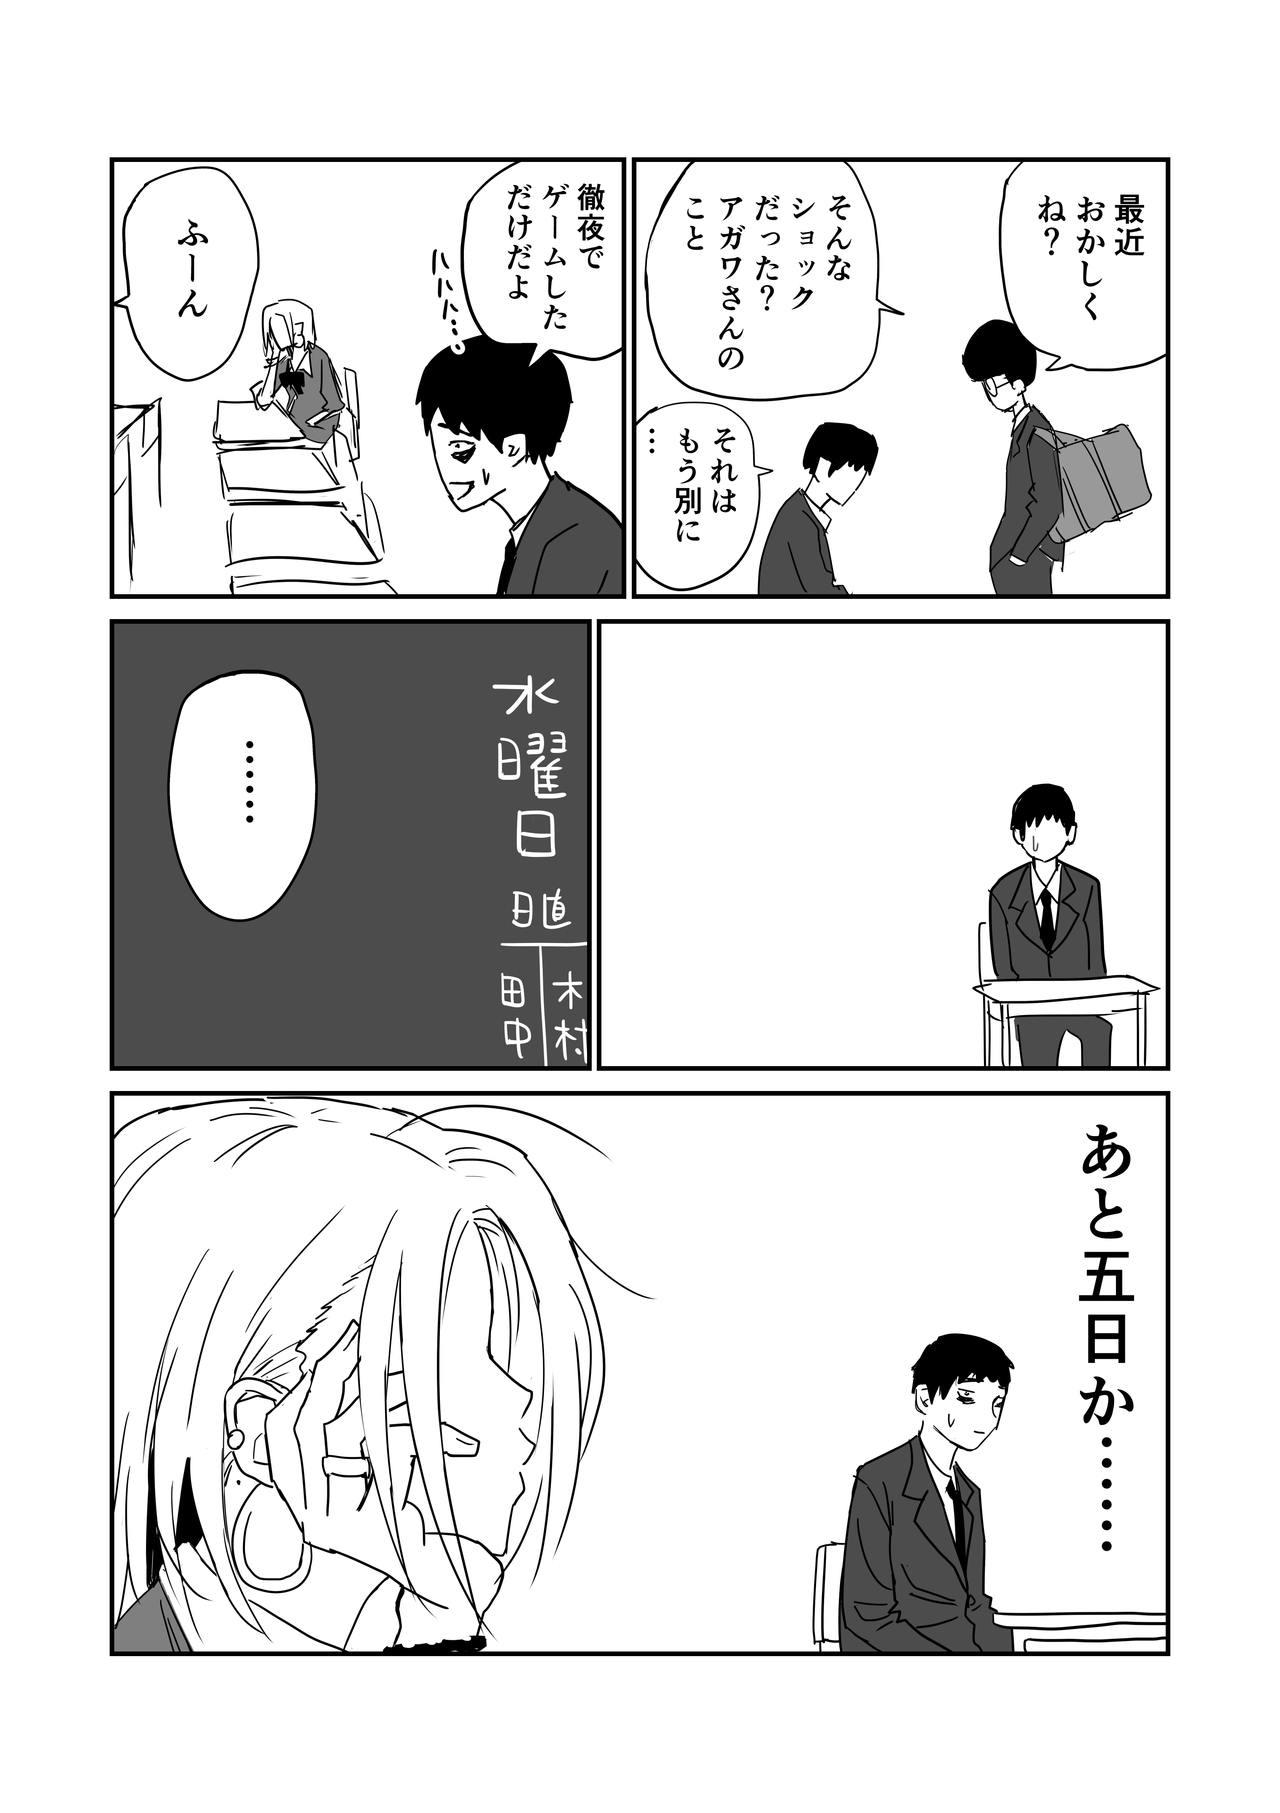 女子高生のエロ漫画 44